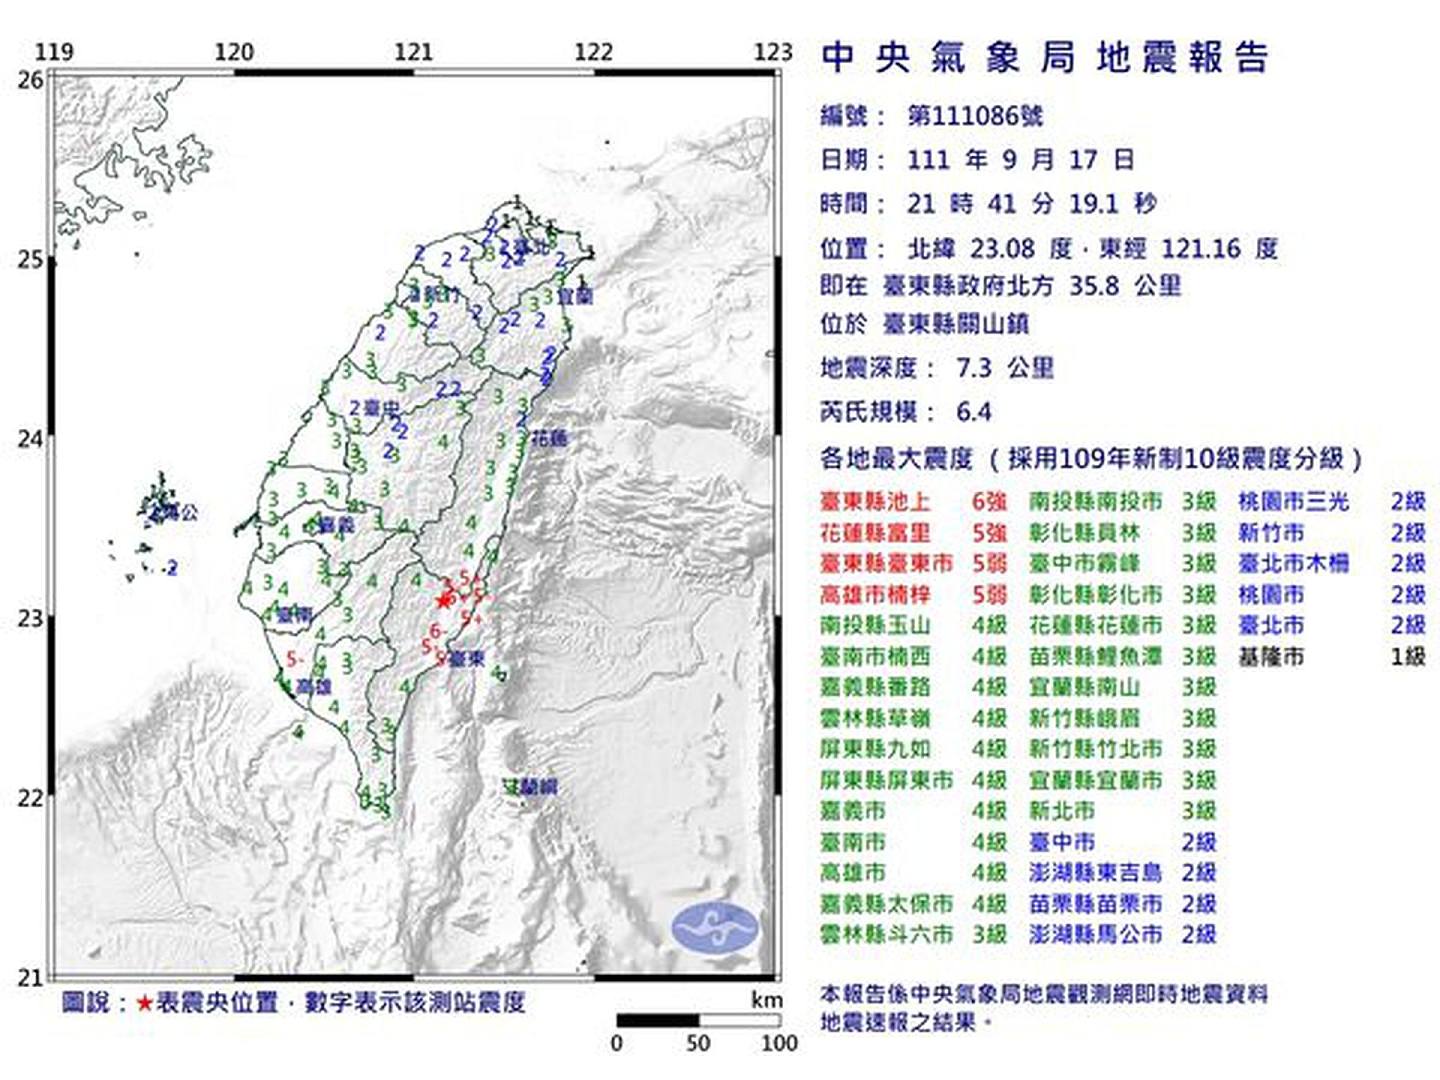 台湾中央气象台称这是台湾改制以来规模最大的地震。